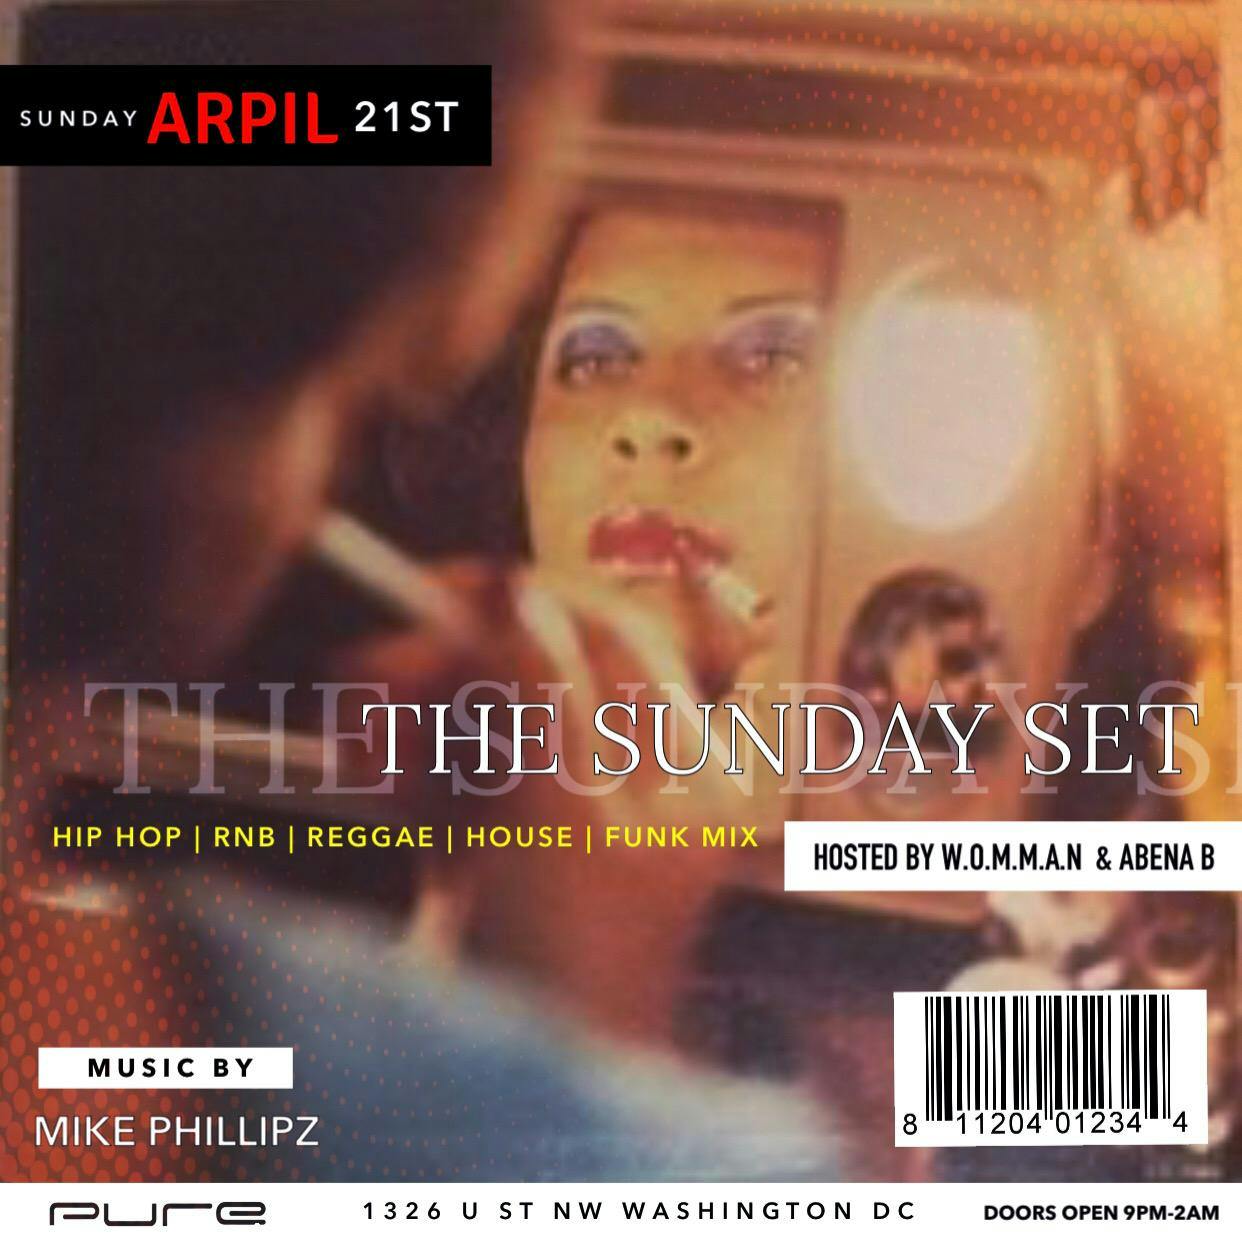 The Sunday Set by W.O.M.M.A.N & Abena B